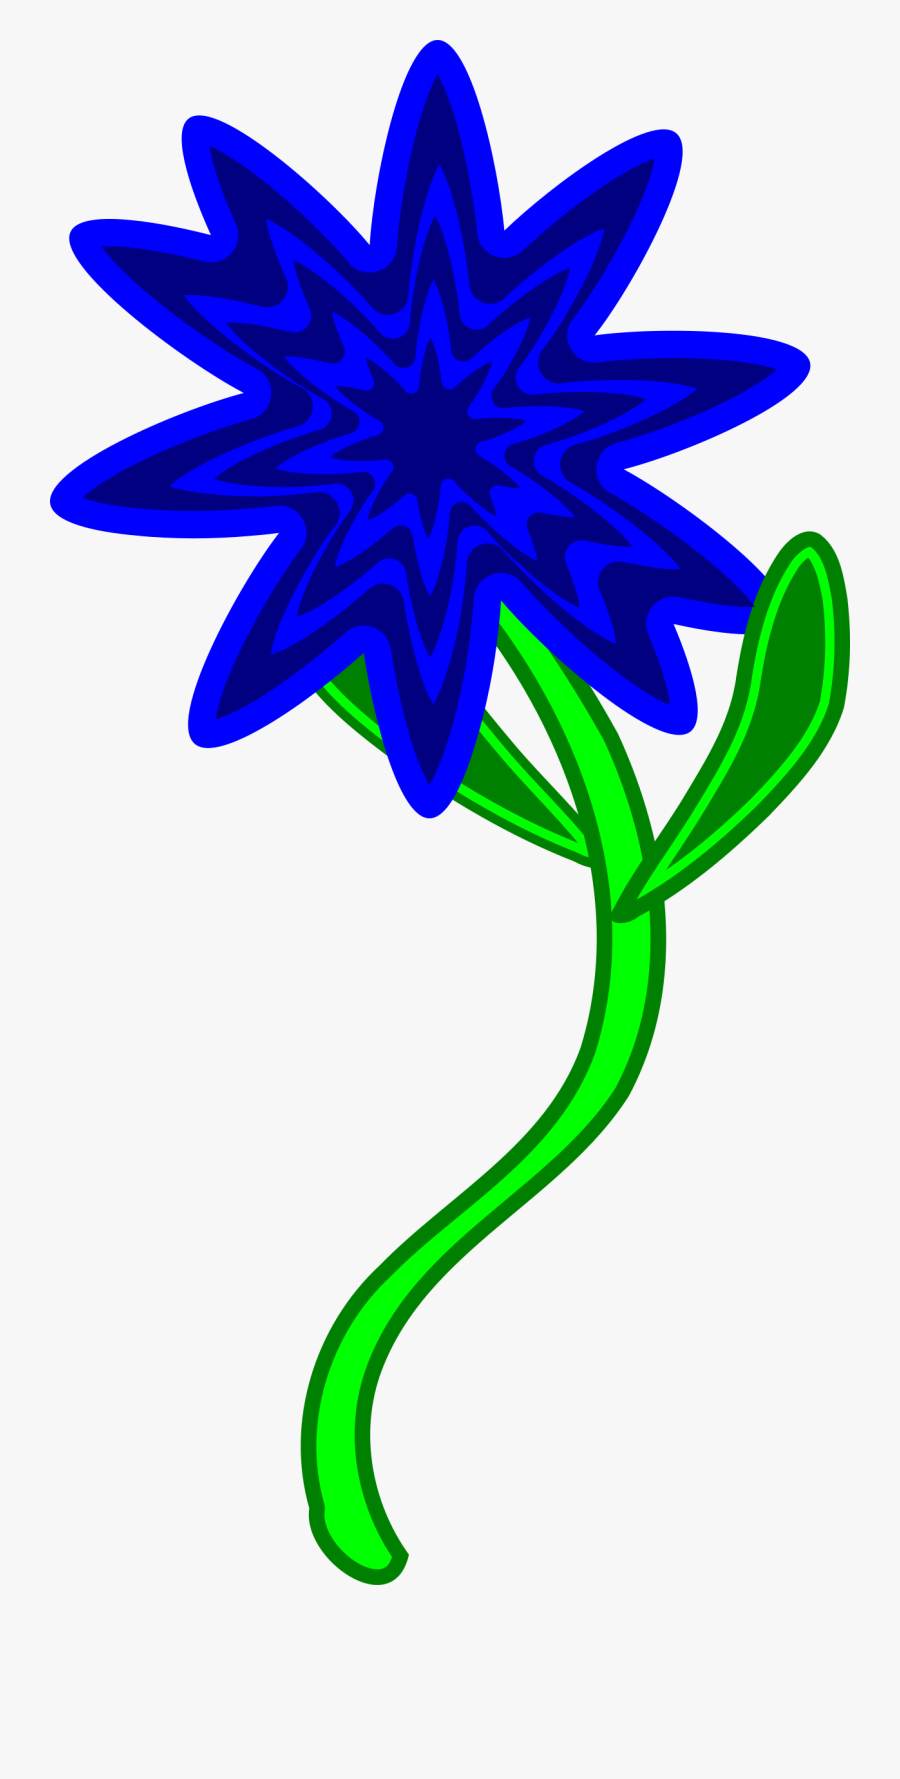 Triptastic Blue Flower - Clip Art, Transparent Clipart